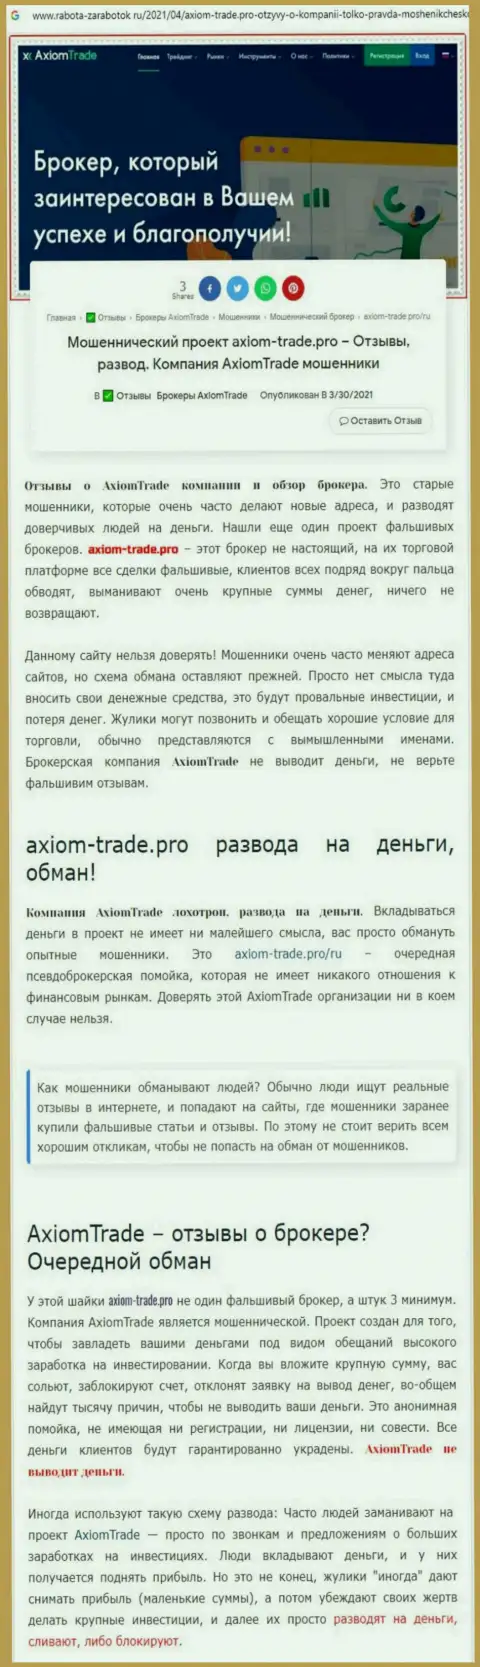 В организации Axiom Trade обманывают - доказательства мошеннических деяний (обзор манипуляций компании)